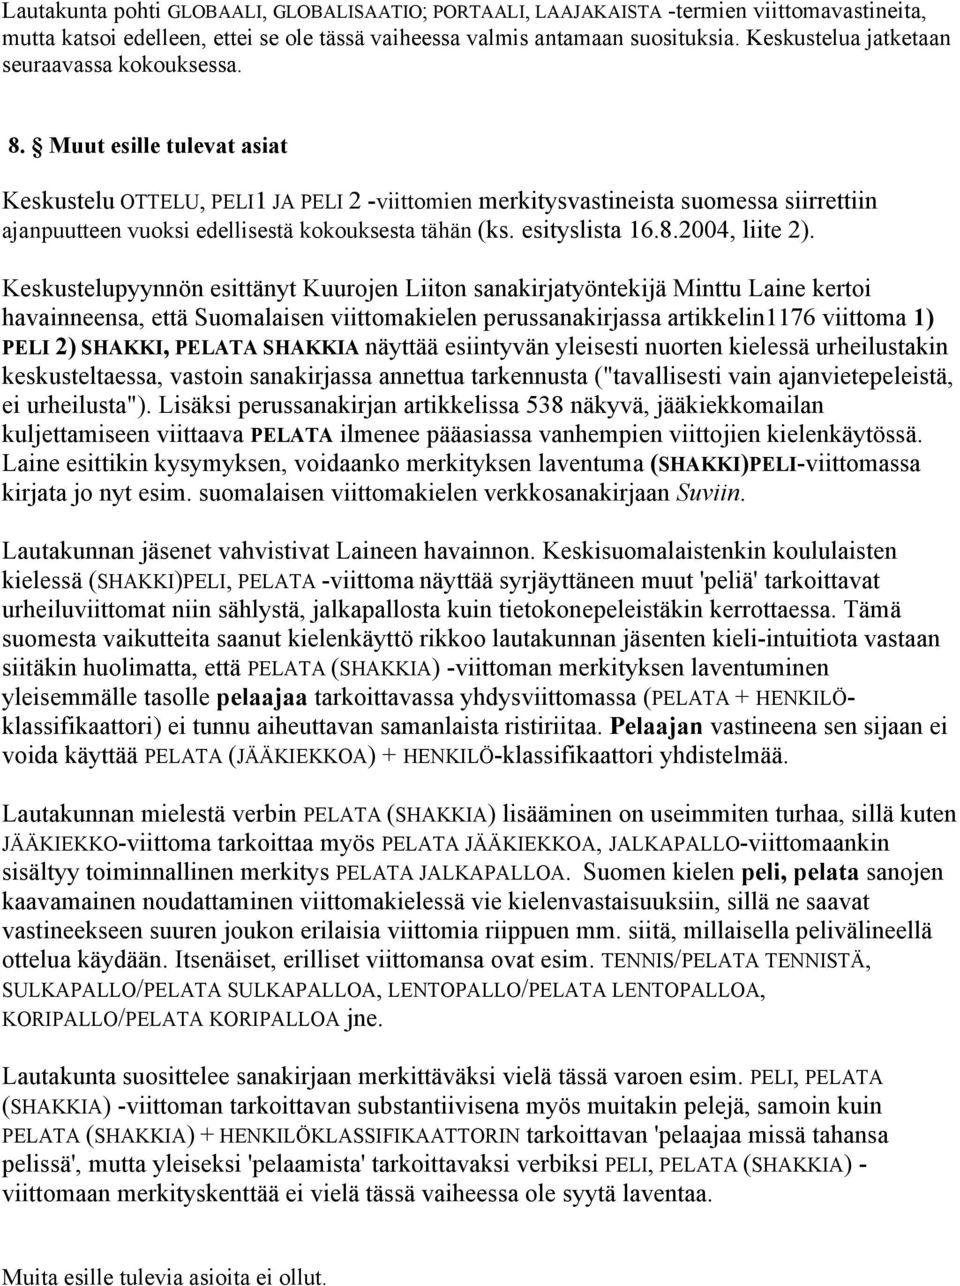 Muut esille tulevat asiat Keskustelu OTTELU, PELI1 JA PELI 2 -viittomien merkitysvastineista suomessa siirrettiin ajanpuutteen vuoksi edellisestä kokouksesta tähän (ks. esityslista 16.8.